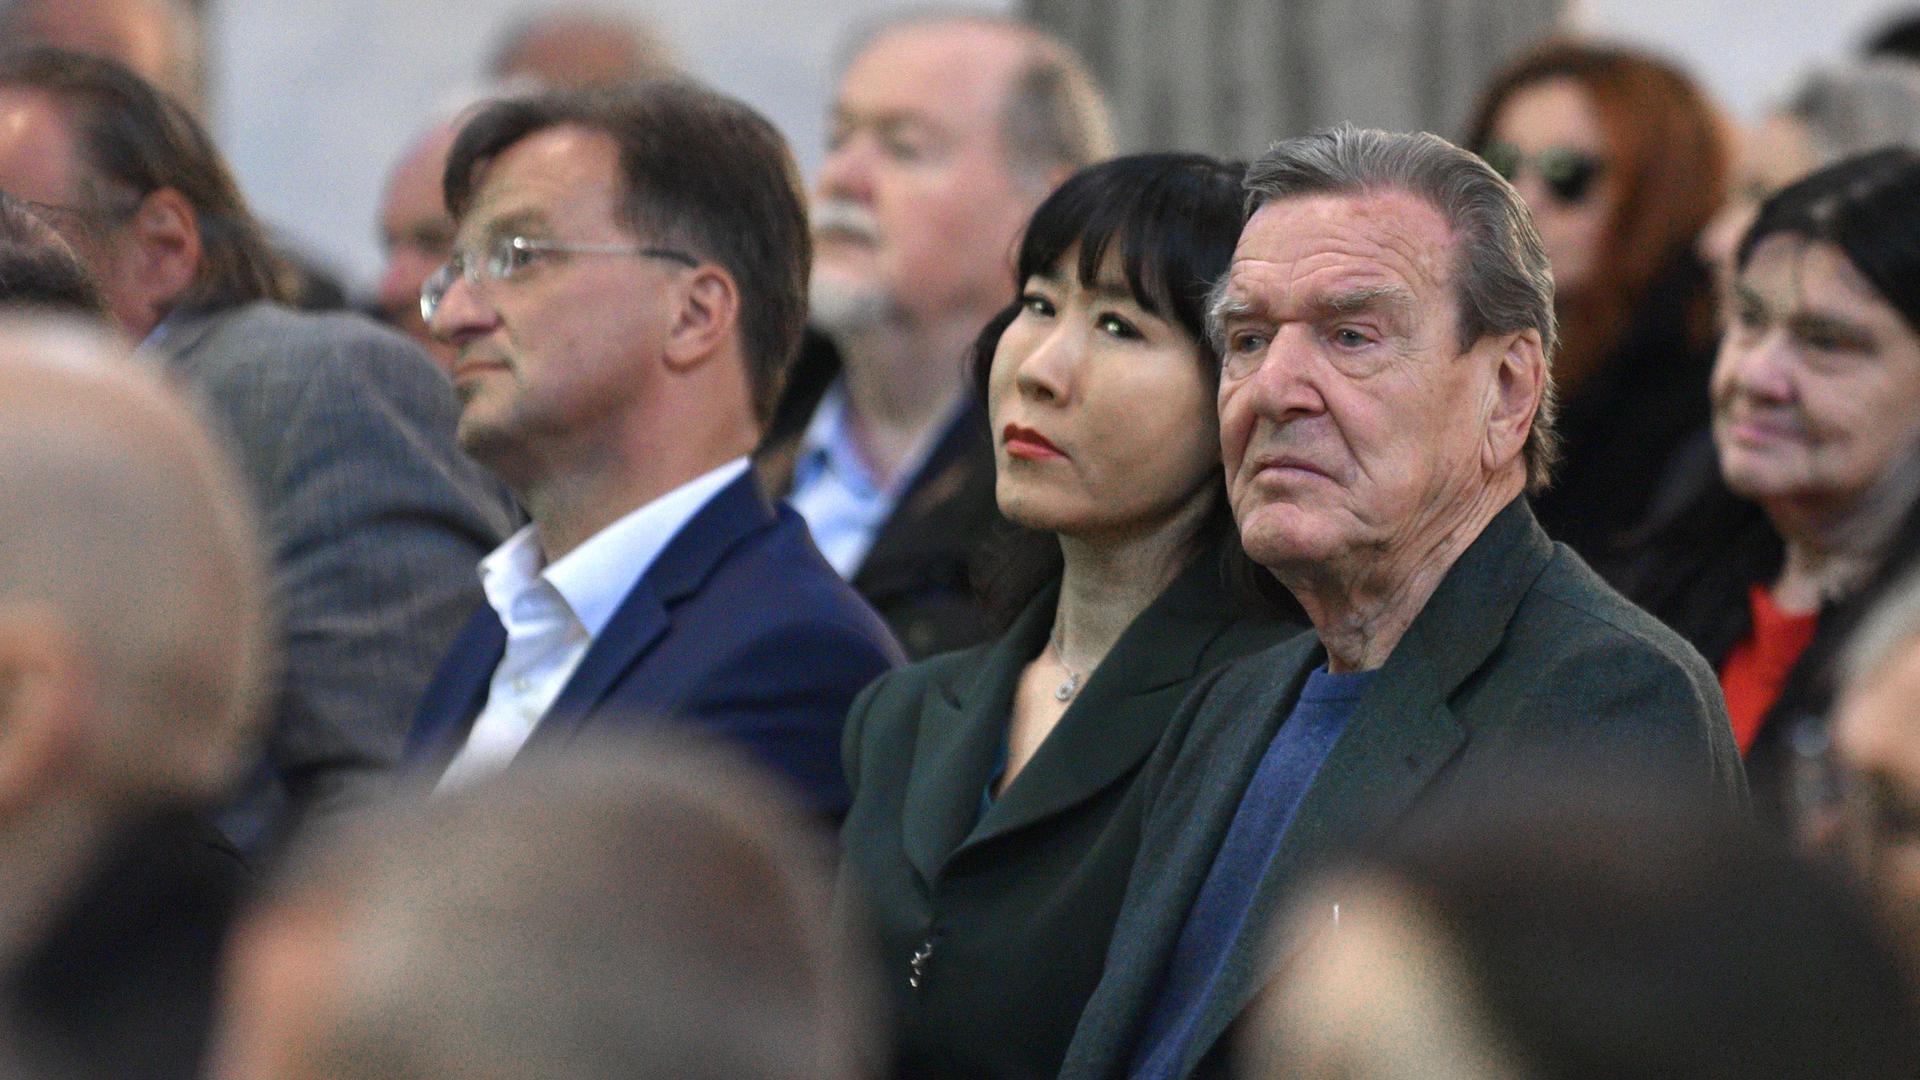 Kunstsinniges Publikum: Altkanzler Gerhard Schröder und Ehefrau Soyeon Schröder-Kim haben sich unter die Gäste des Festakts gemischt.